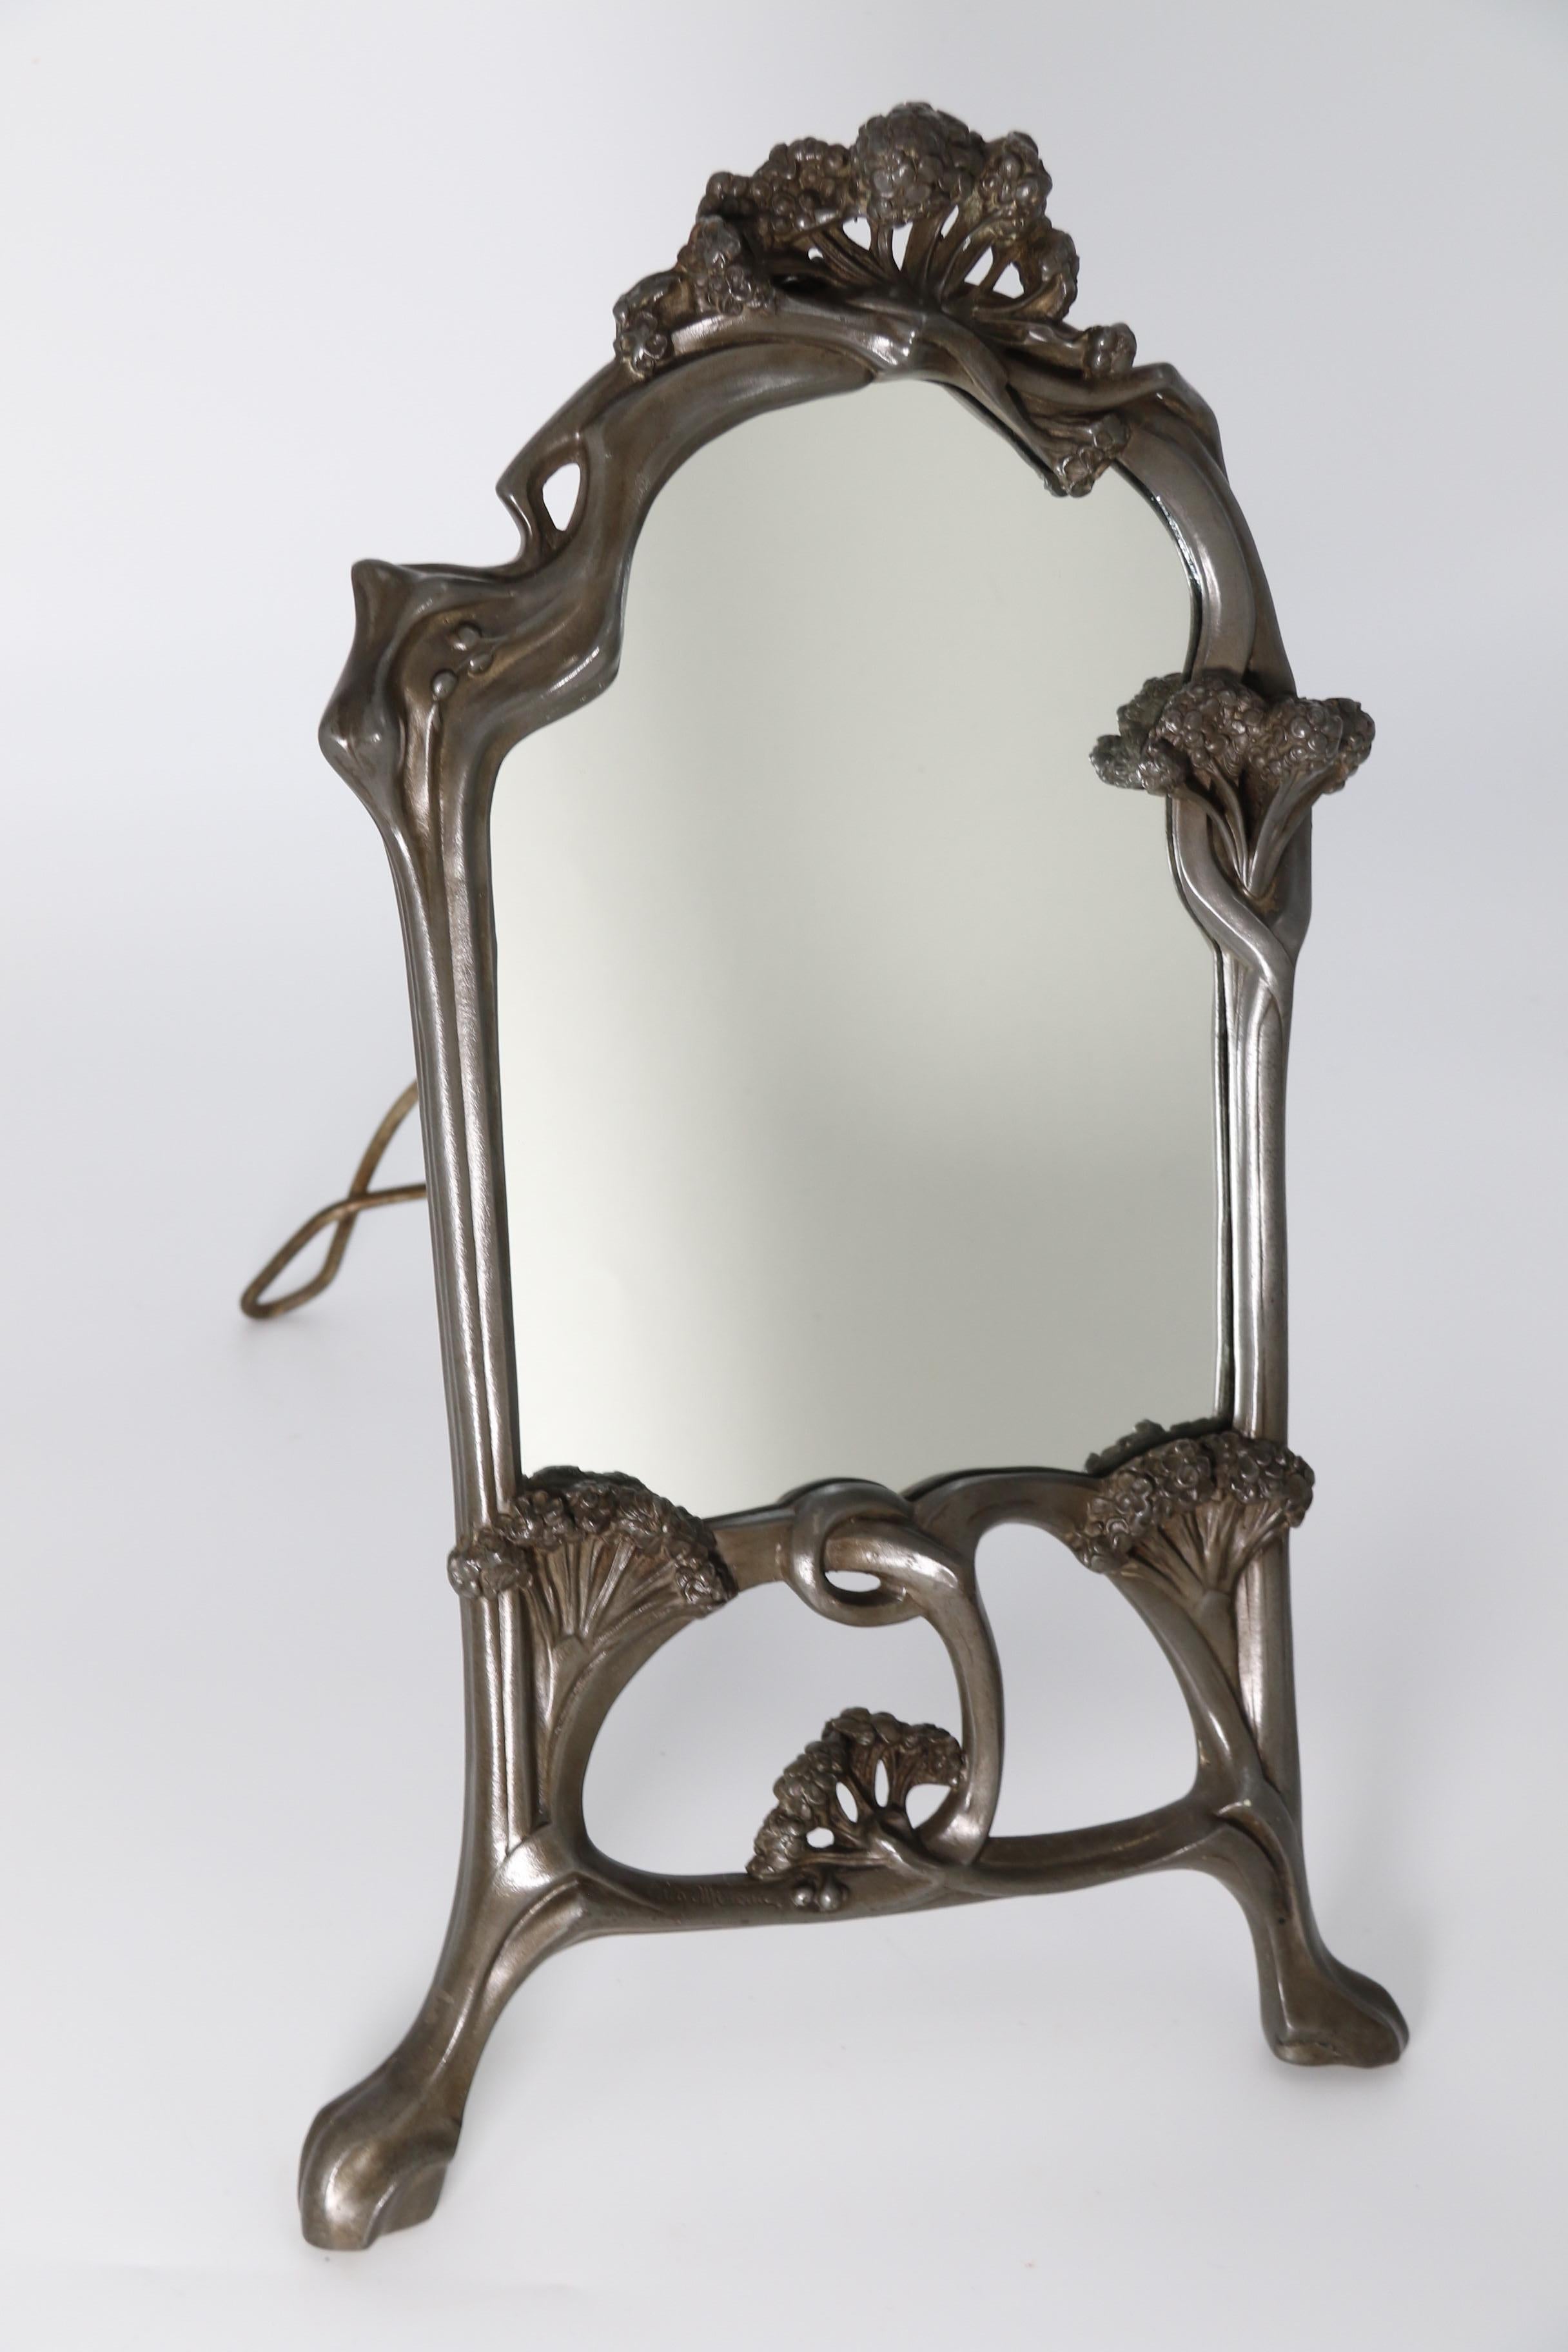 
Dieser stilvolle und schwer gegossene Spiegel aus massivem Zinn ist ein freistehender Tischspiegel mit einer klappbaren Staffelei, die auf ein Anschlagscharnier ausgeklappt werden kann, um den Spiegel zu stützen.

Der Spiegelrahmen ist ein